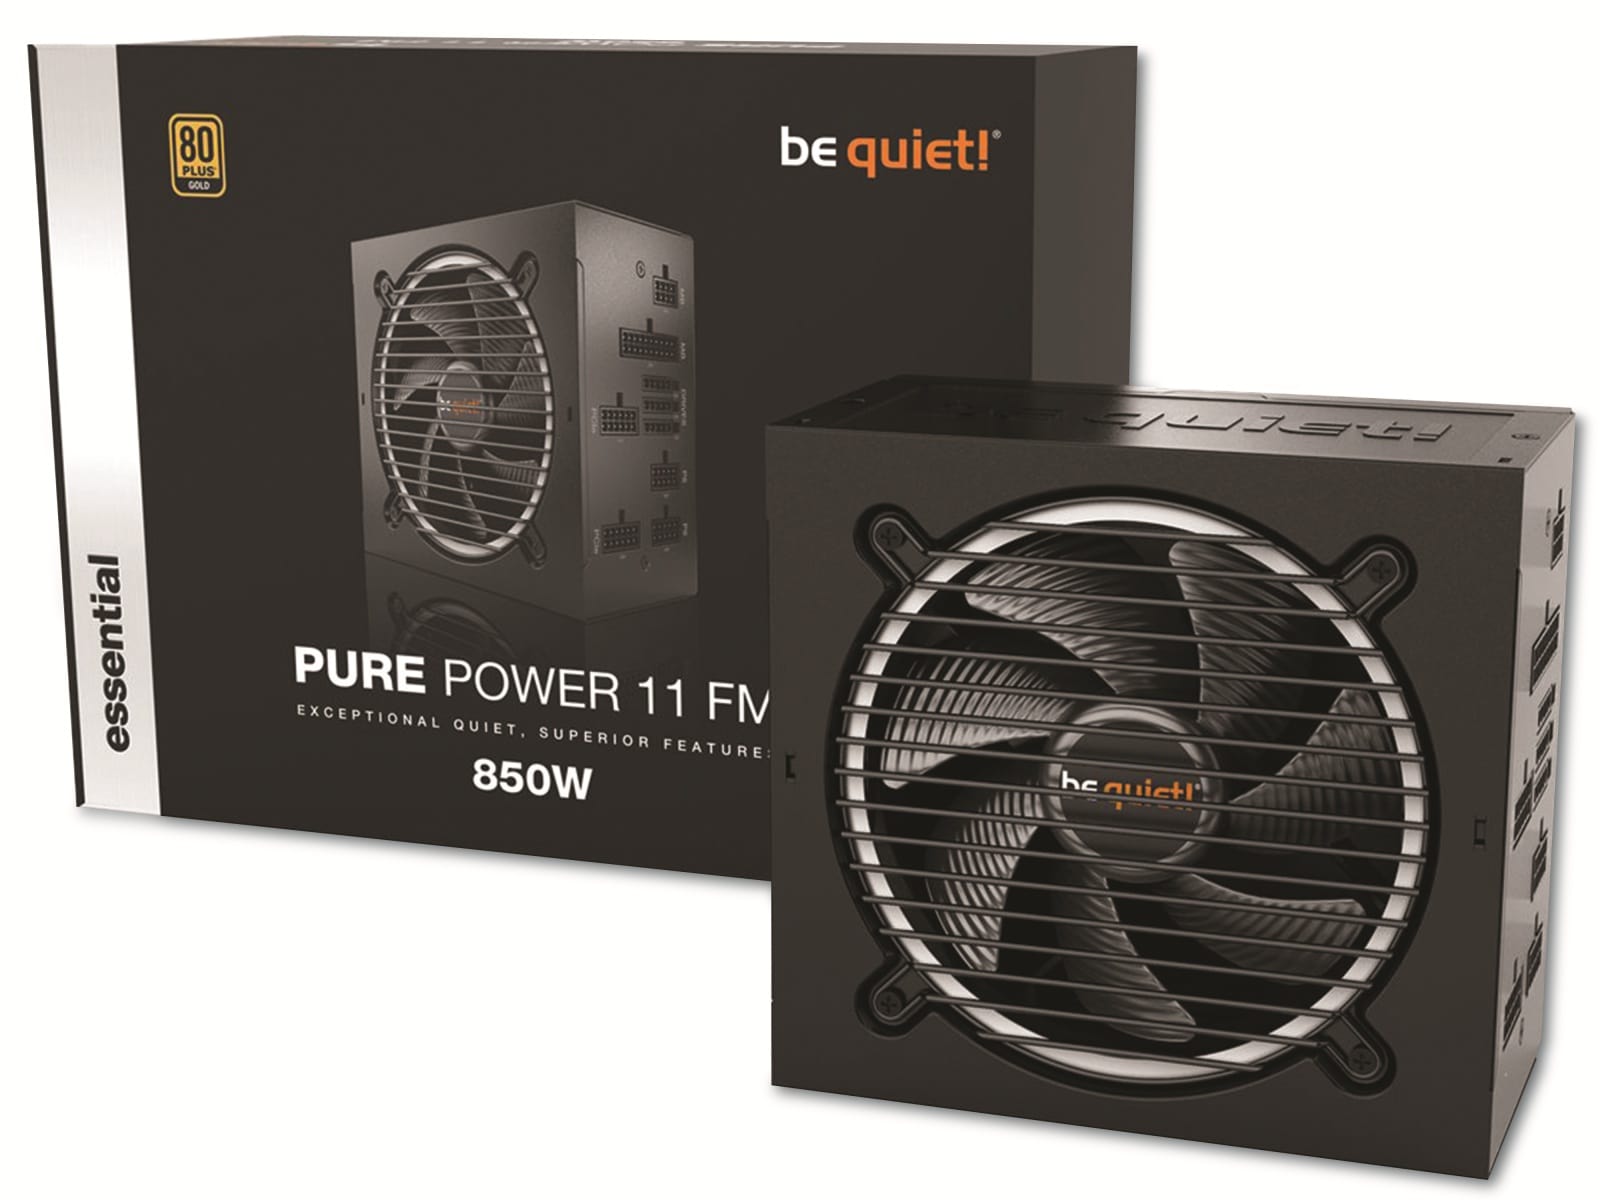  BE QUIET! PC-Netzteil Pure Power 11 FM, 850W, 80+ Gold, Kabelmanagement